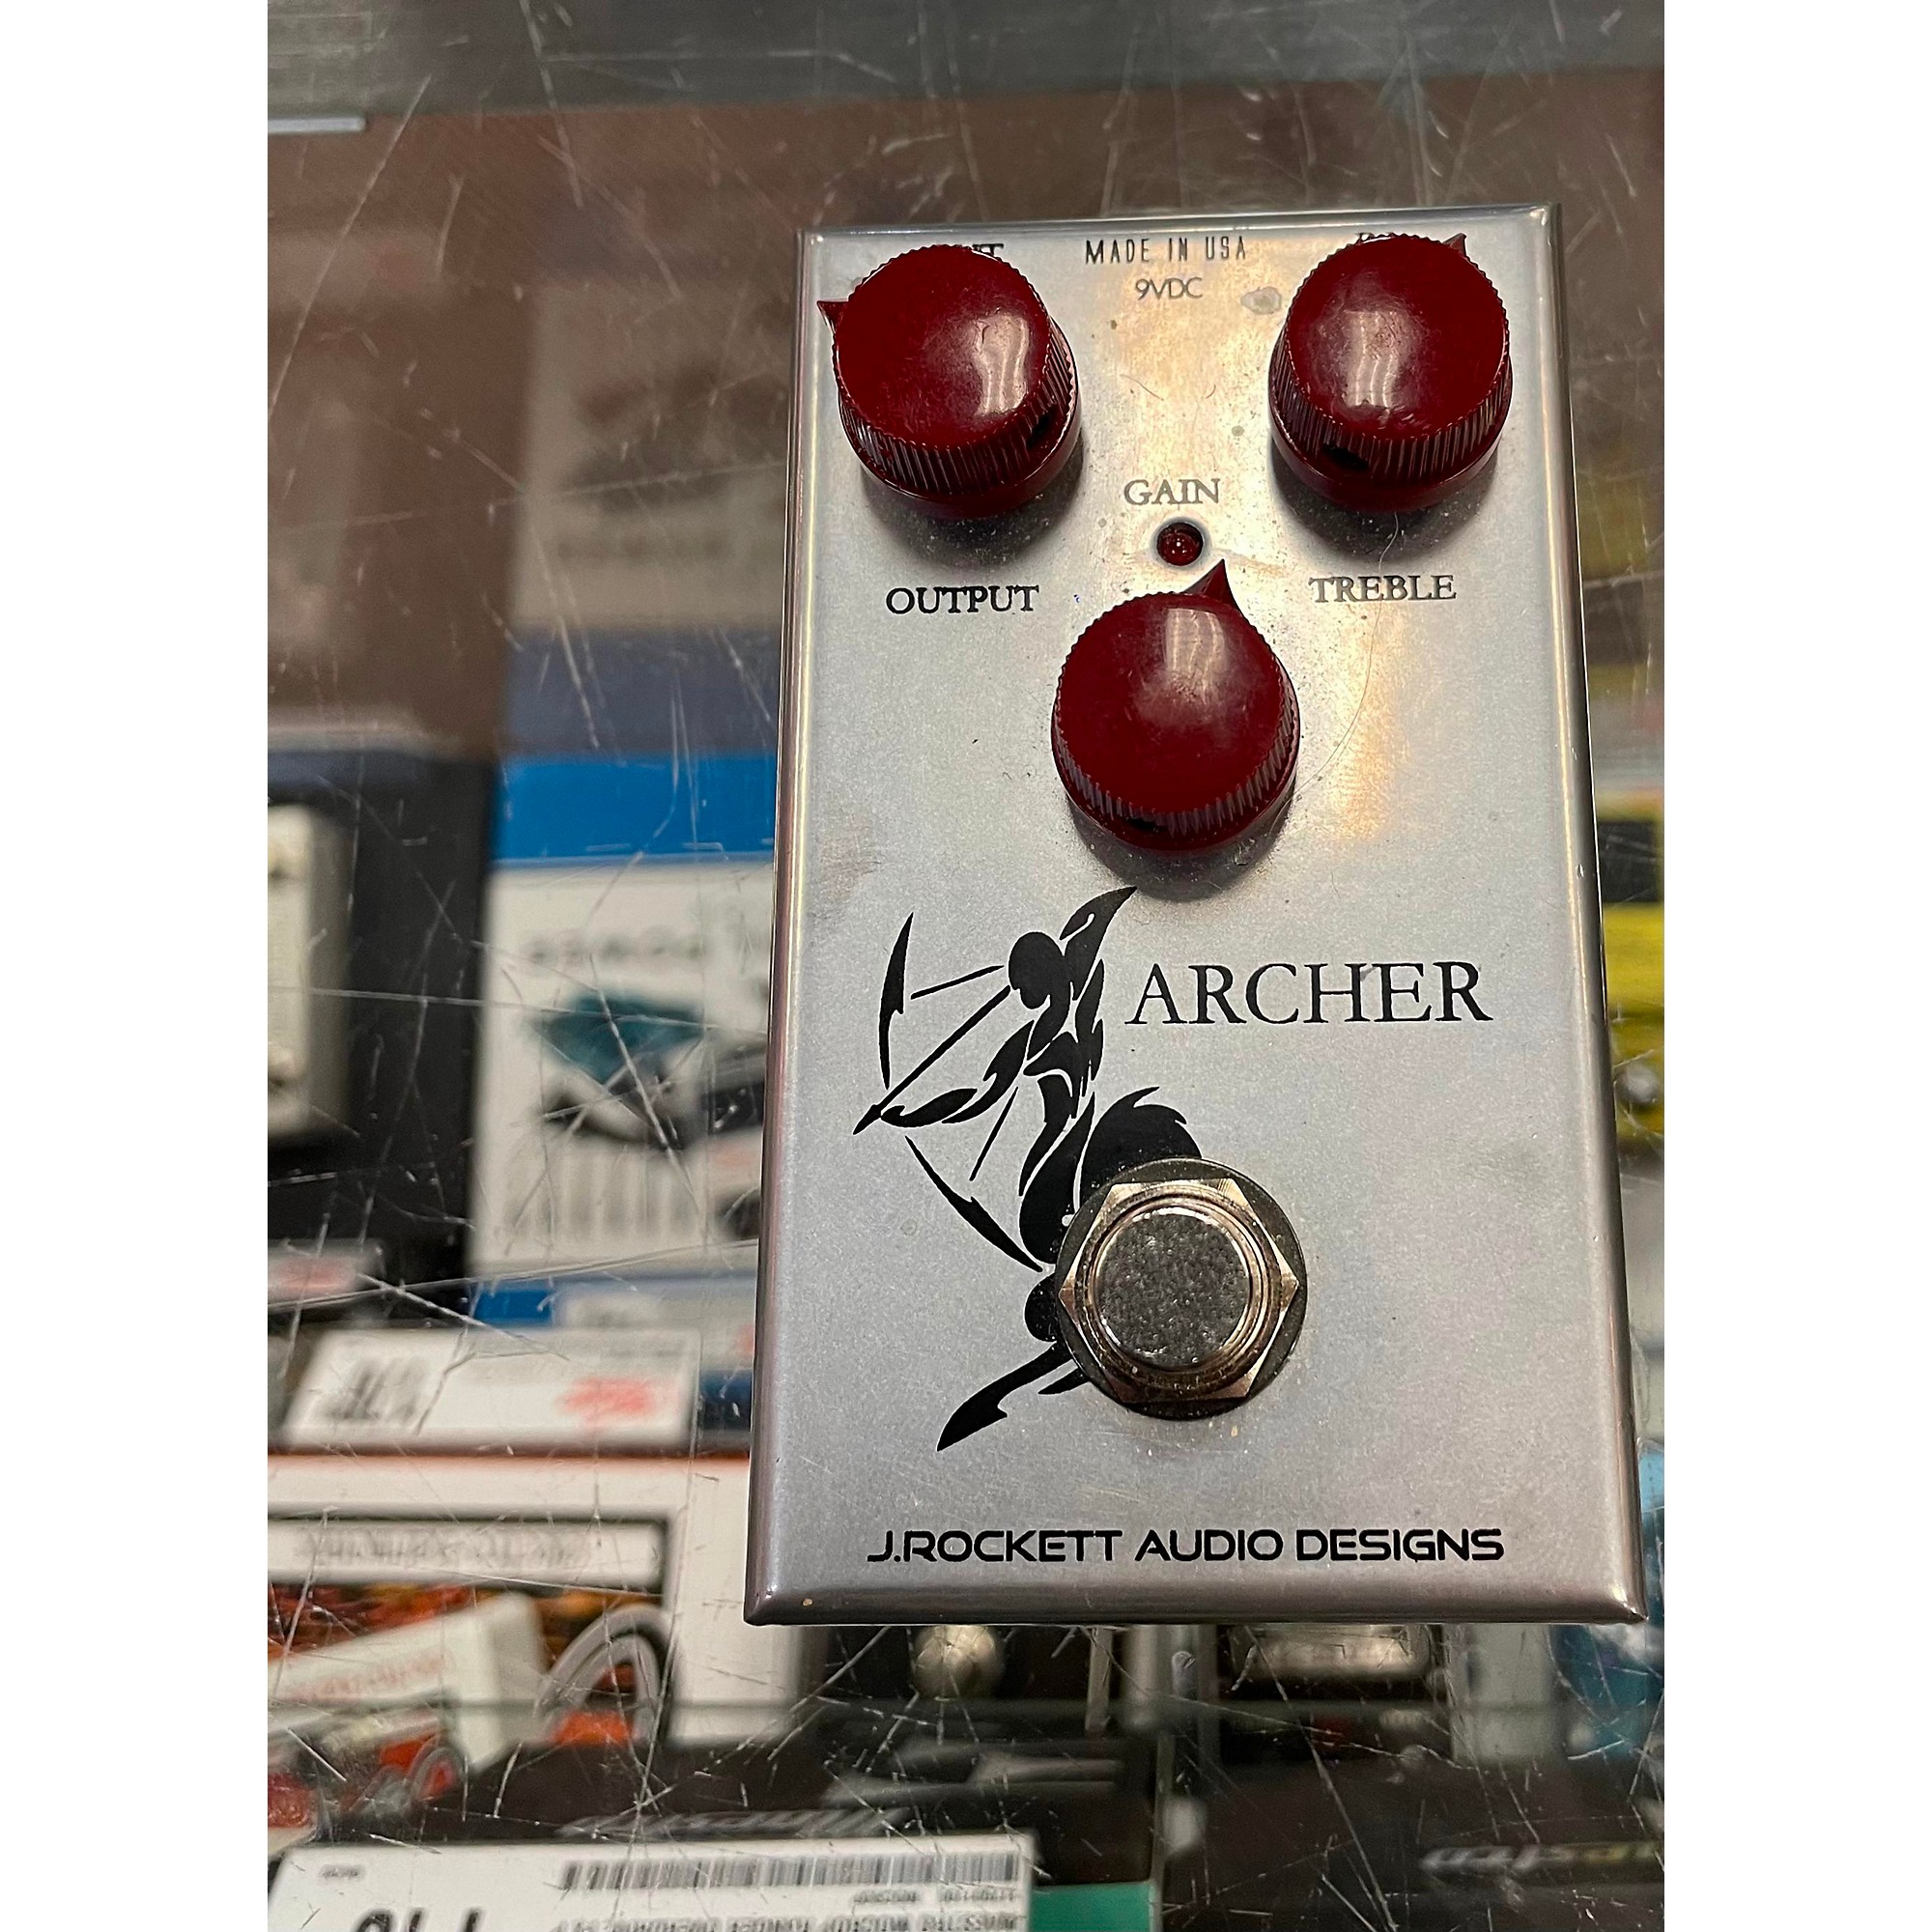 J Rockett Audio Designs Archer-